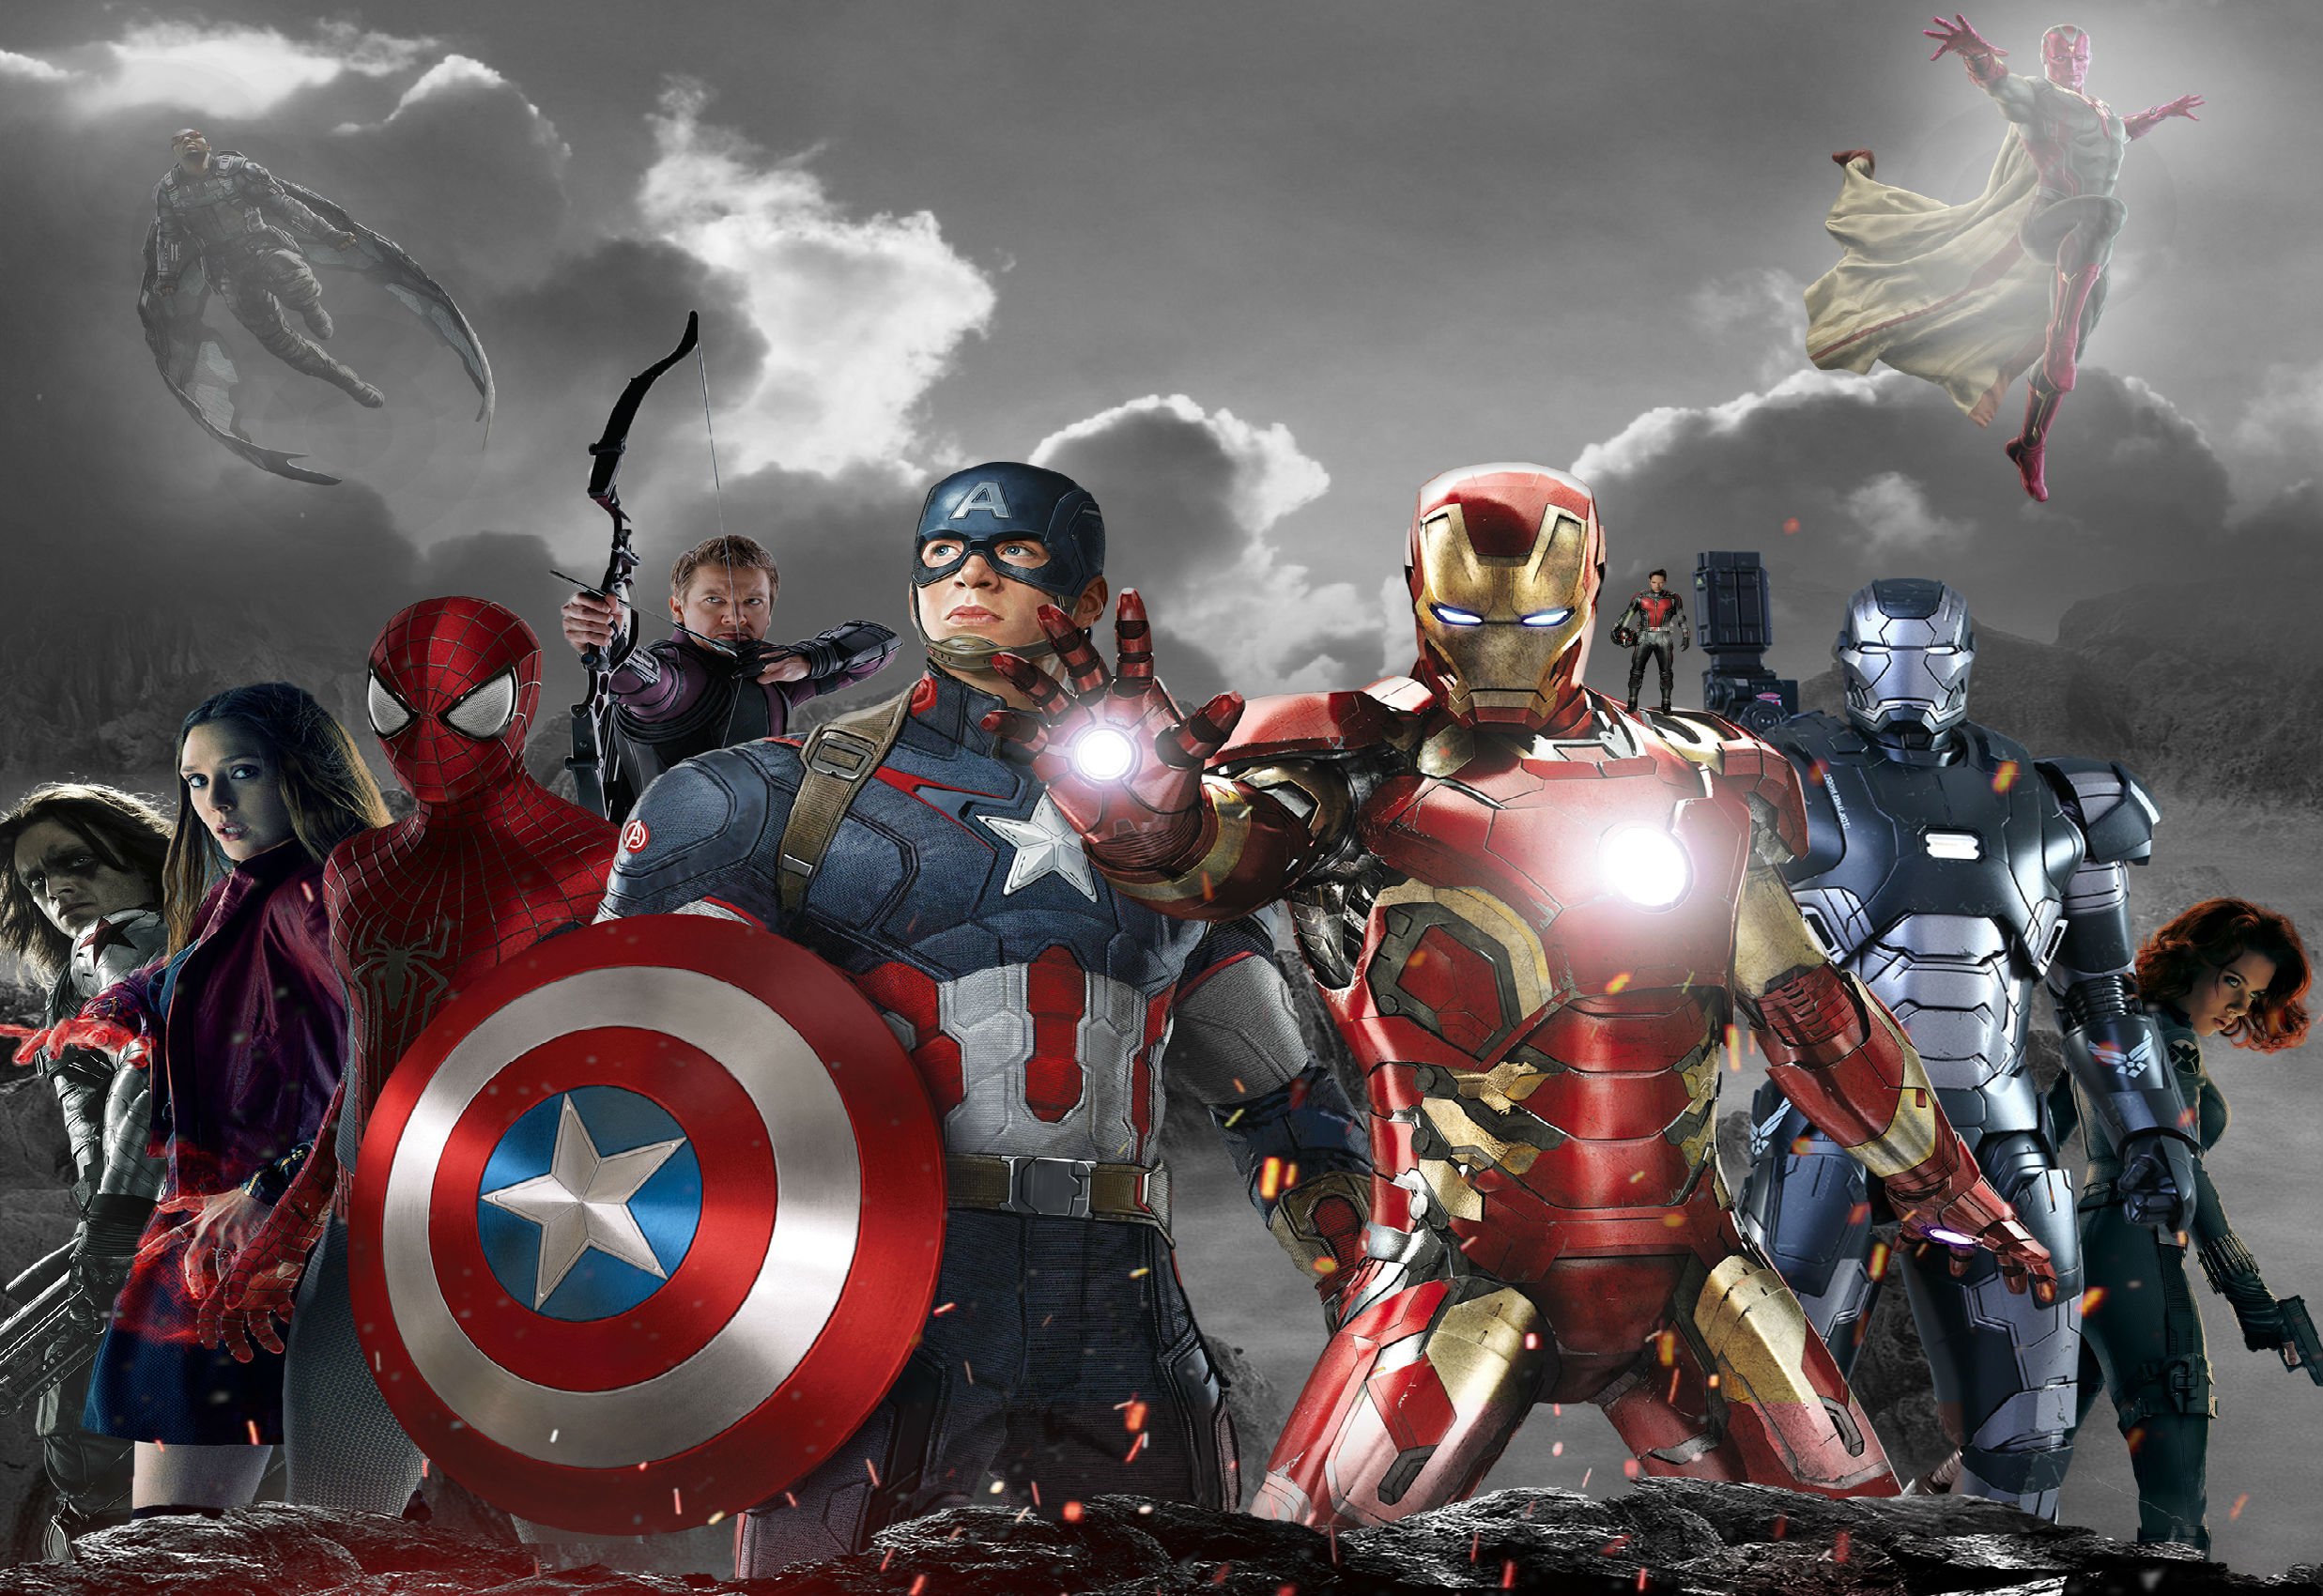 mmk壁紙,スーパーヒーロー,架空の人物,ヒーロー,キャプテン・アメリカ,アクションフィギュア